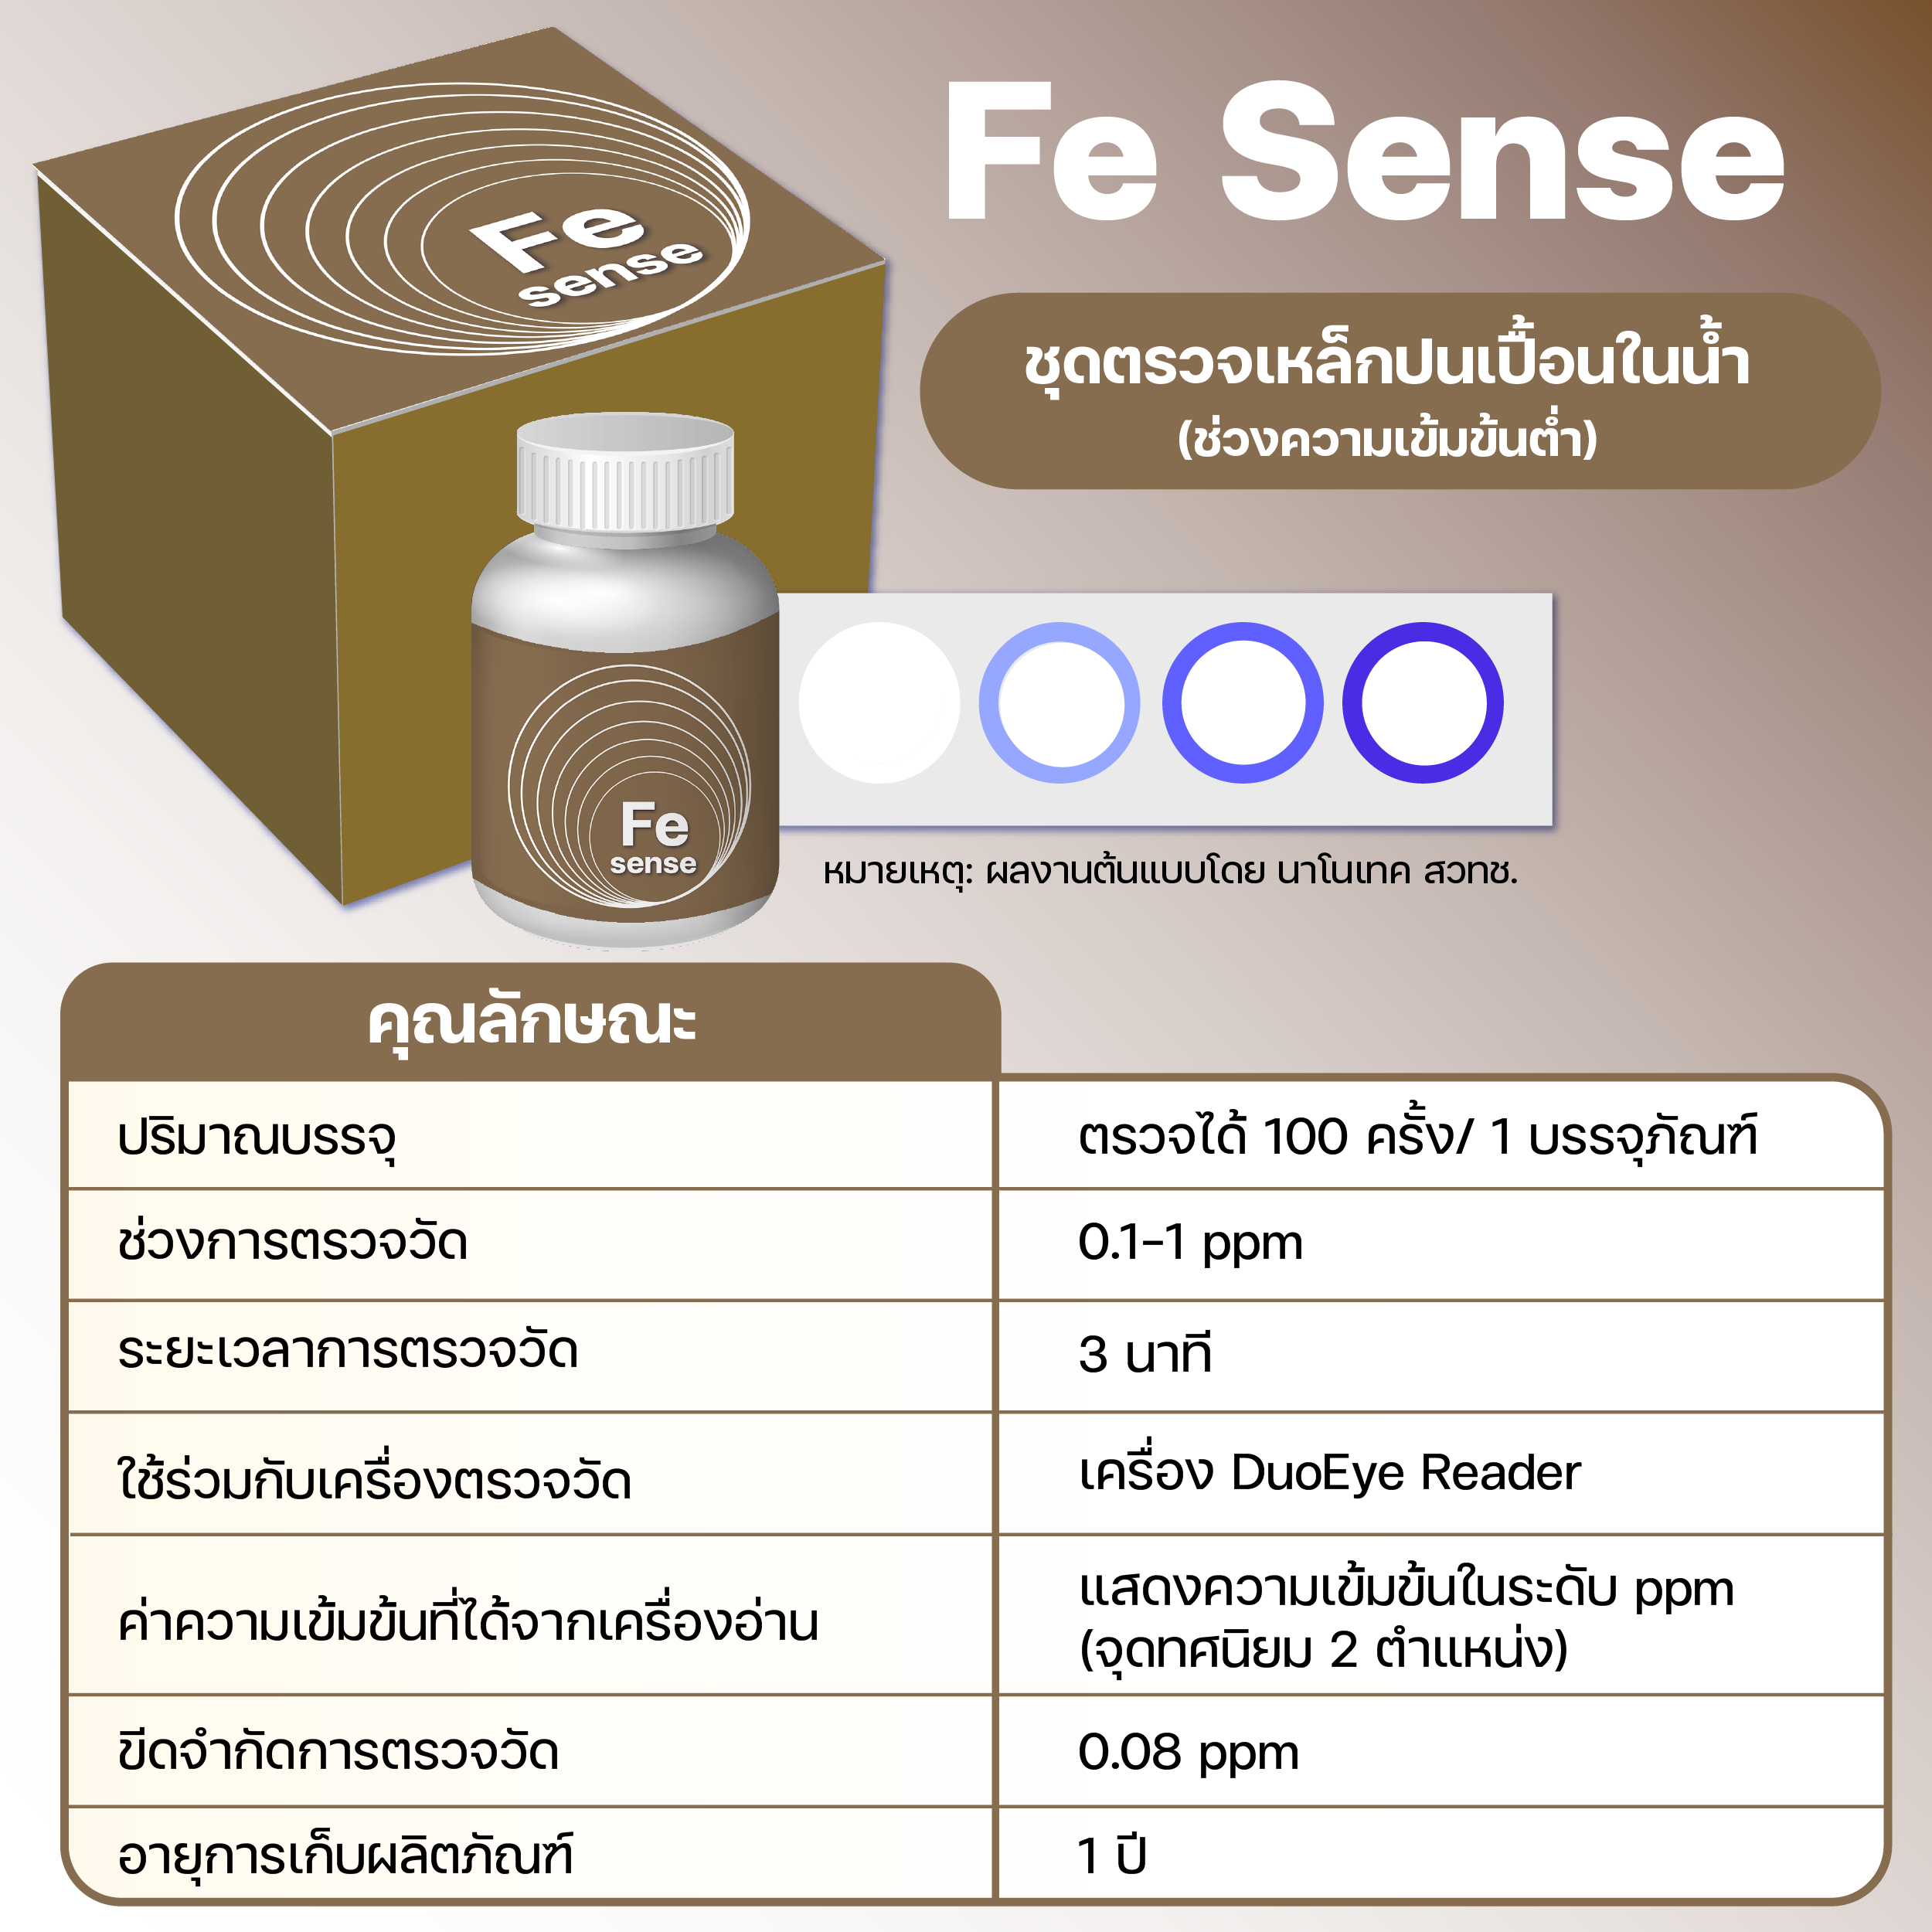 ‘M Sense’ ชุดตรวจโลหะปนเปื้อนในน้ำ ลดค่าตรวจ เพิ่มคุณภาพน้ำกินน้ำใช้ให้ประชาชนไทย